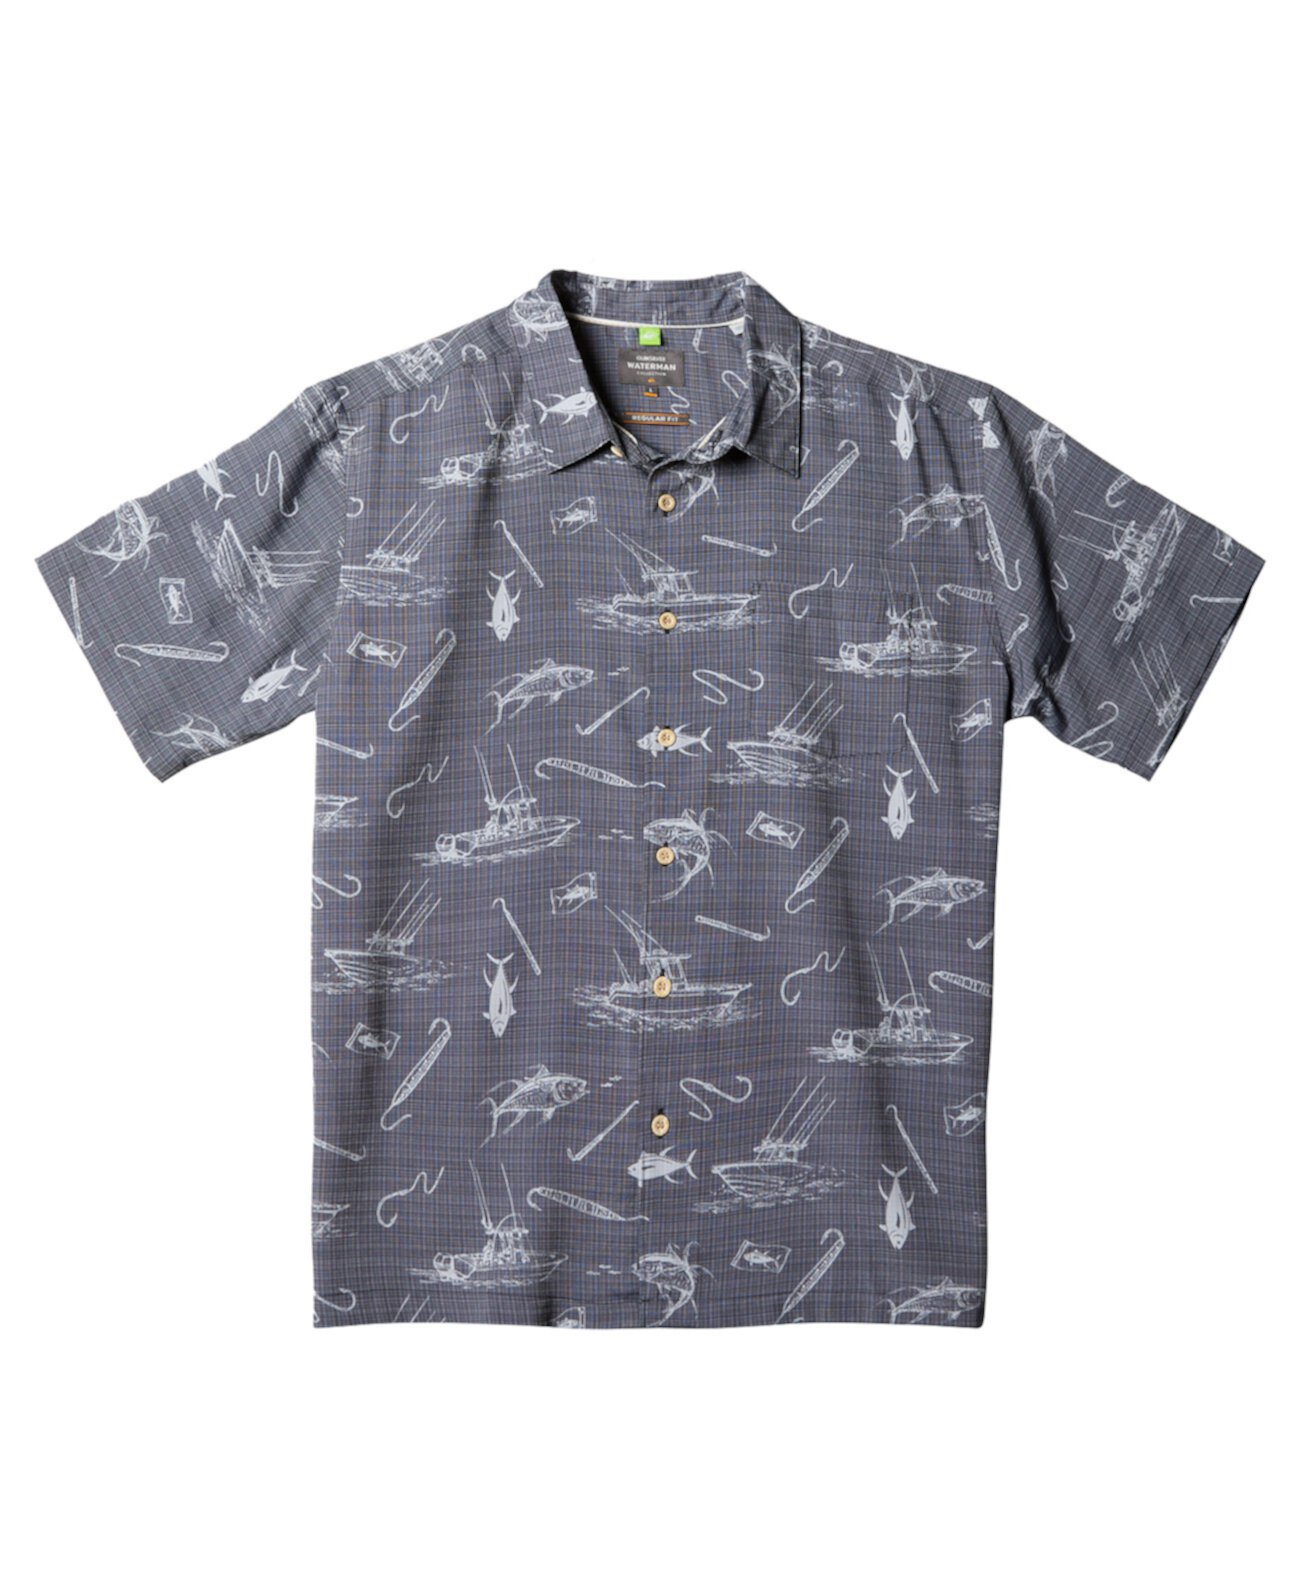 Мужская рубашка Quiksilver Line Spinner с короткими рукавами Quiksilver Waterman